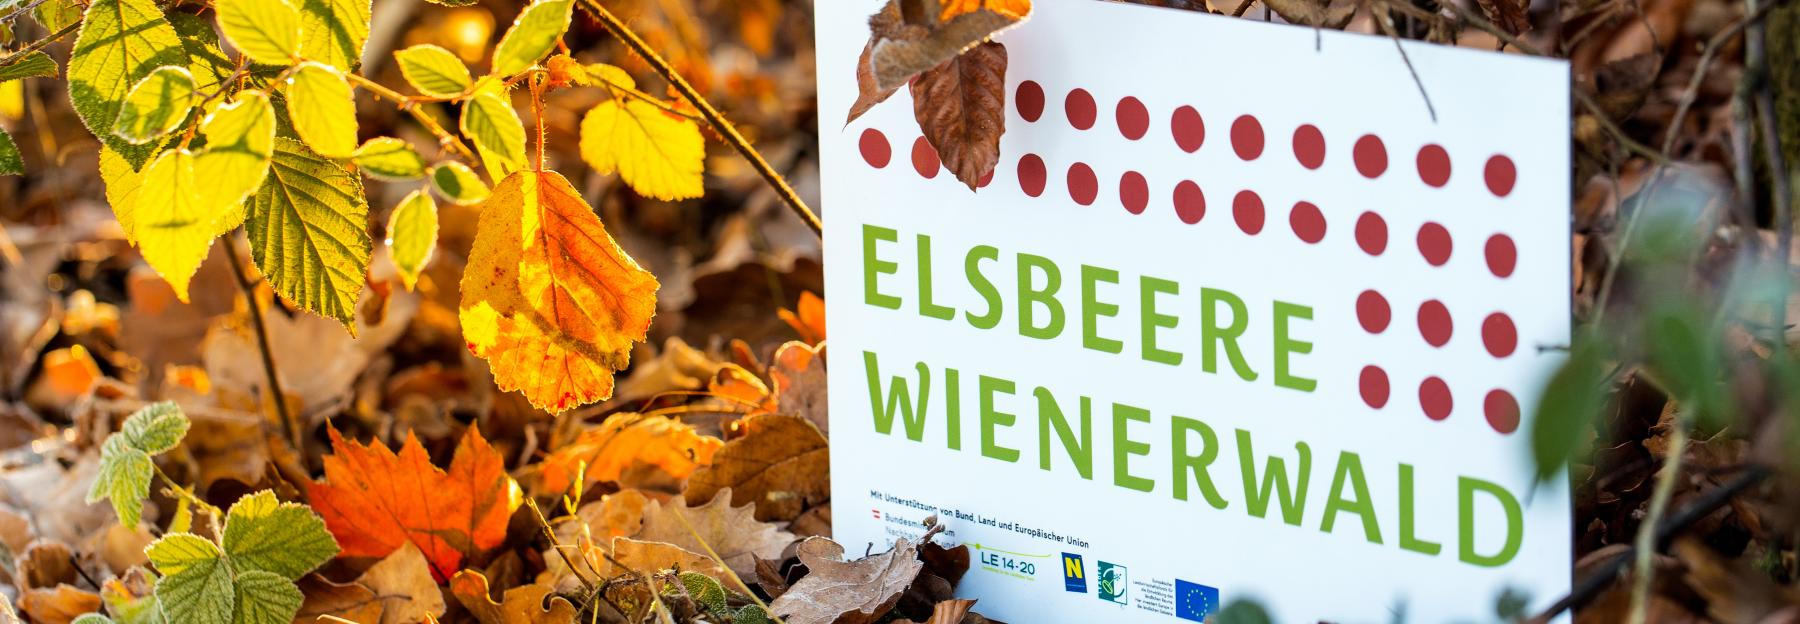 Schild "Elsbeere Wienerwald"